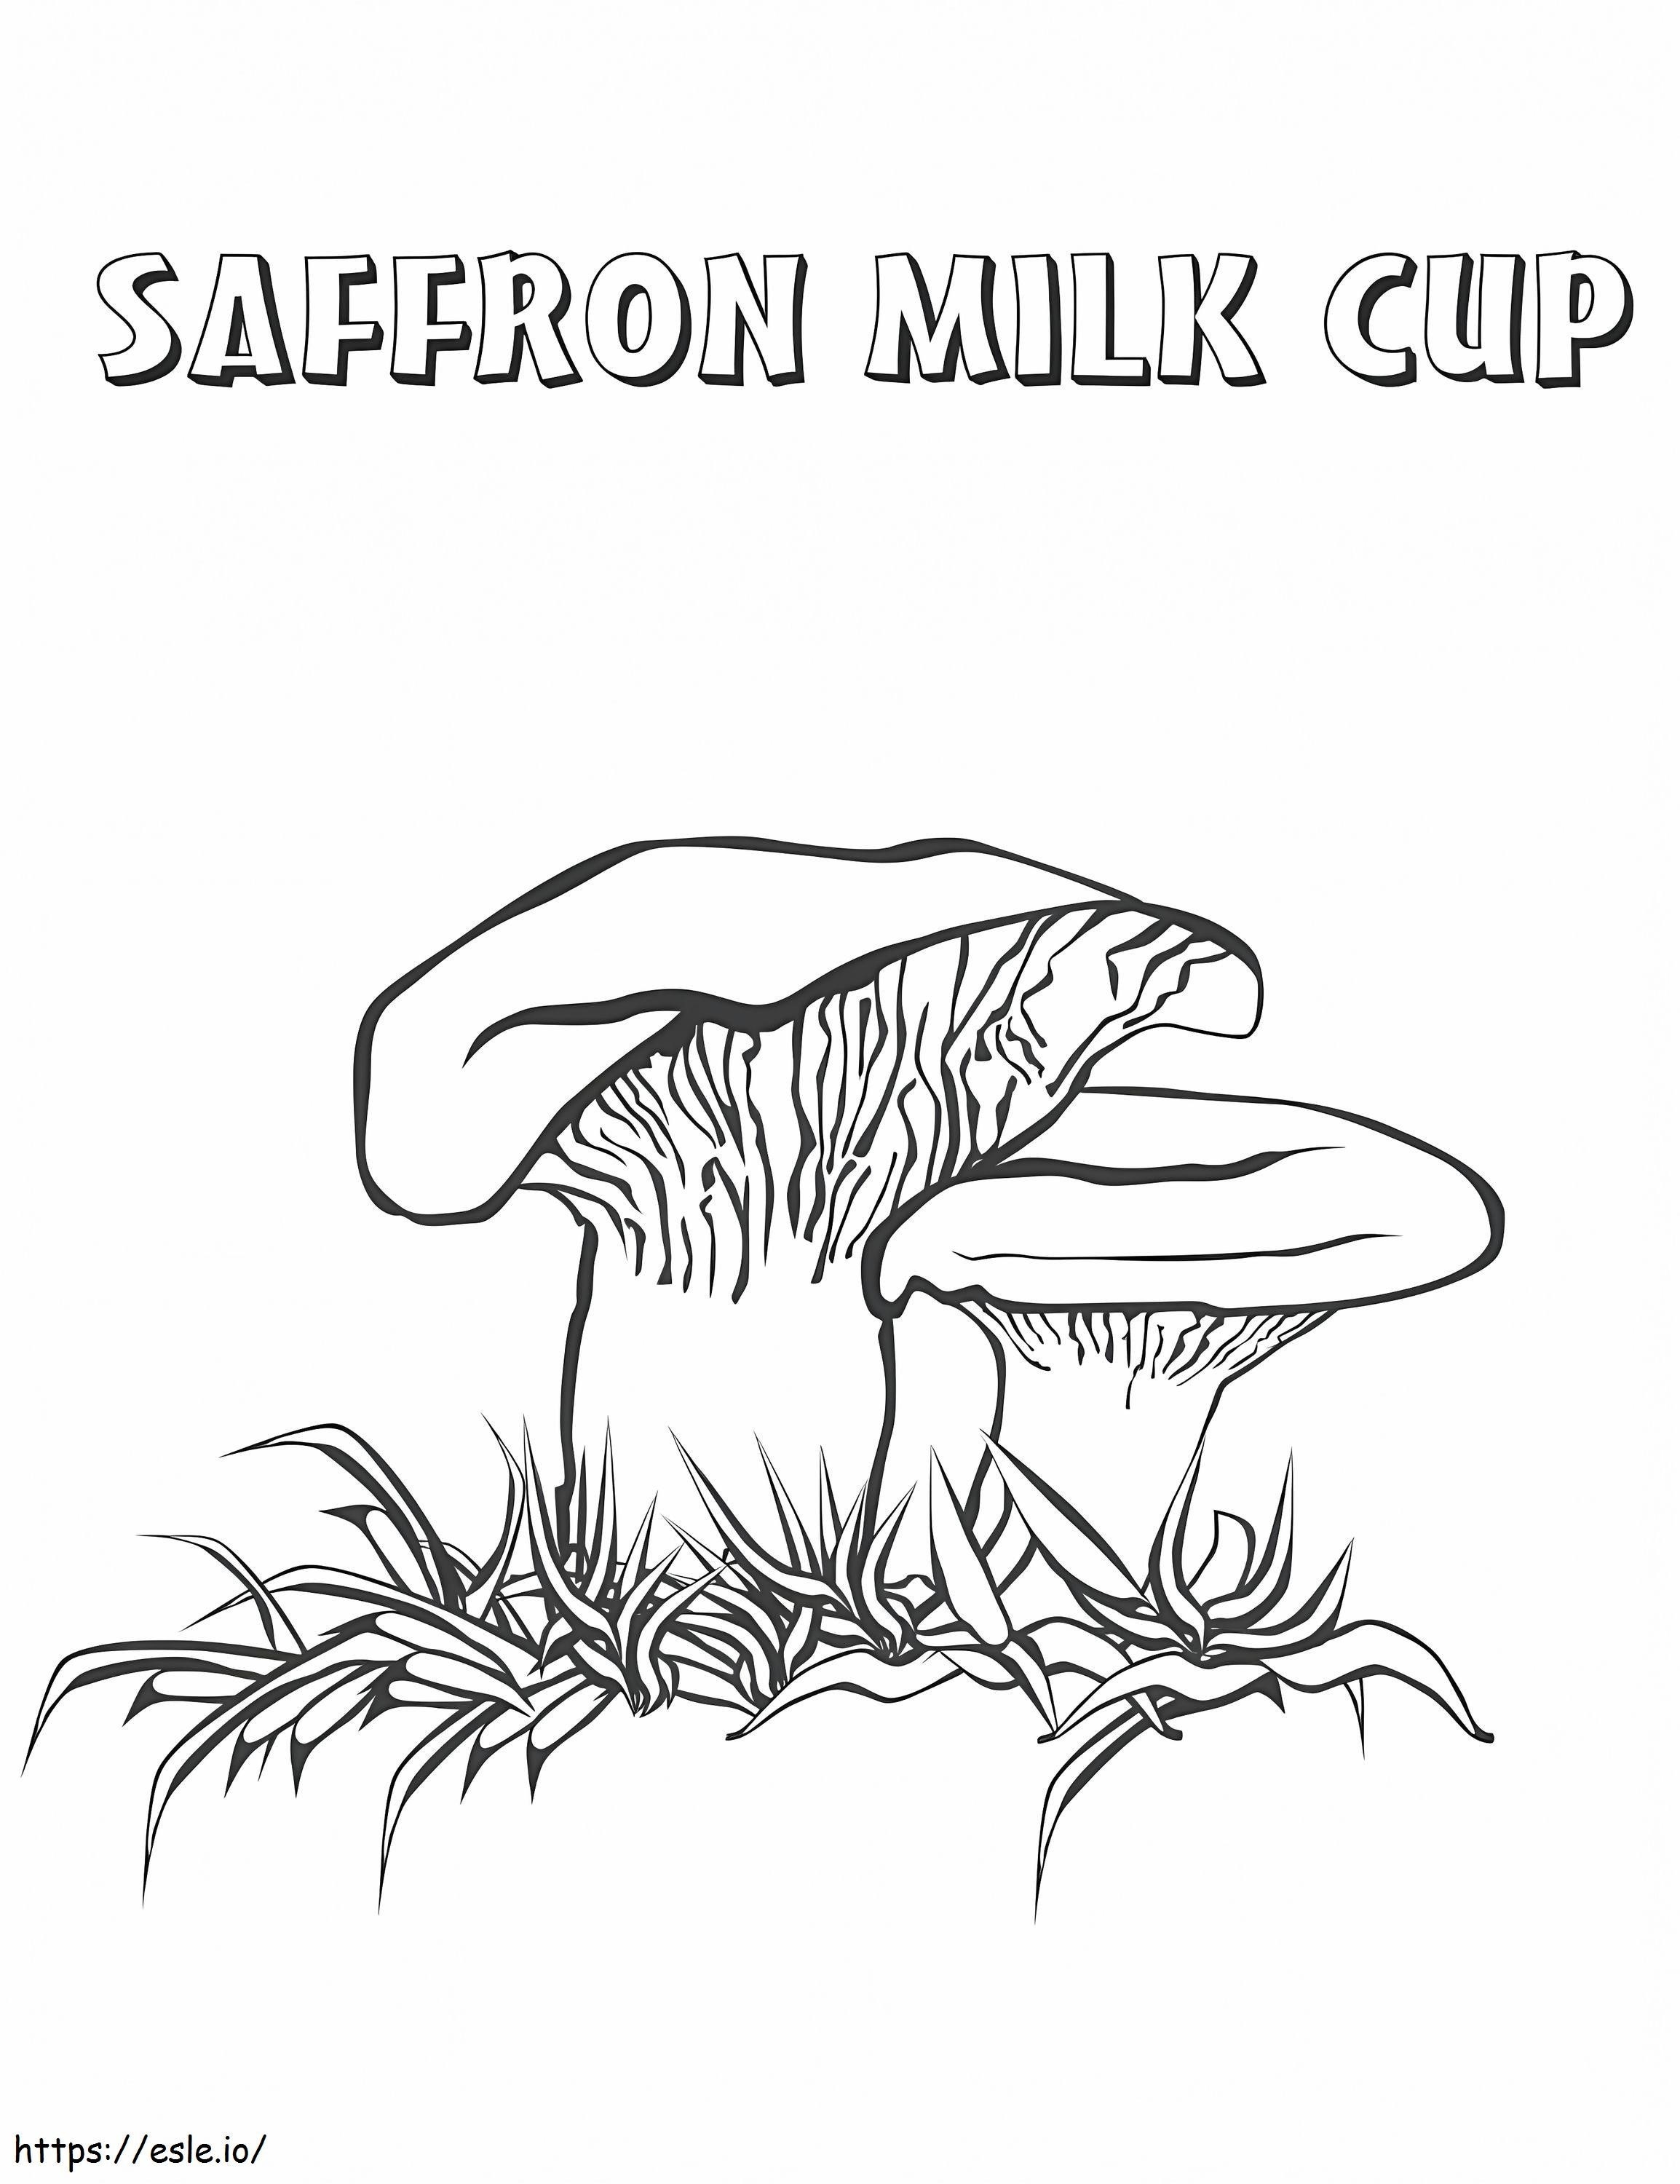 Coloriage Champignons au lait au safran à imprimer dessin